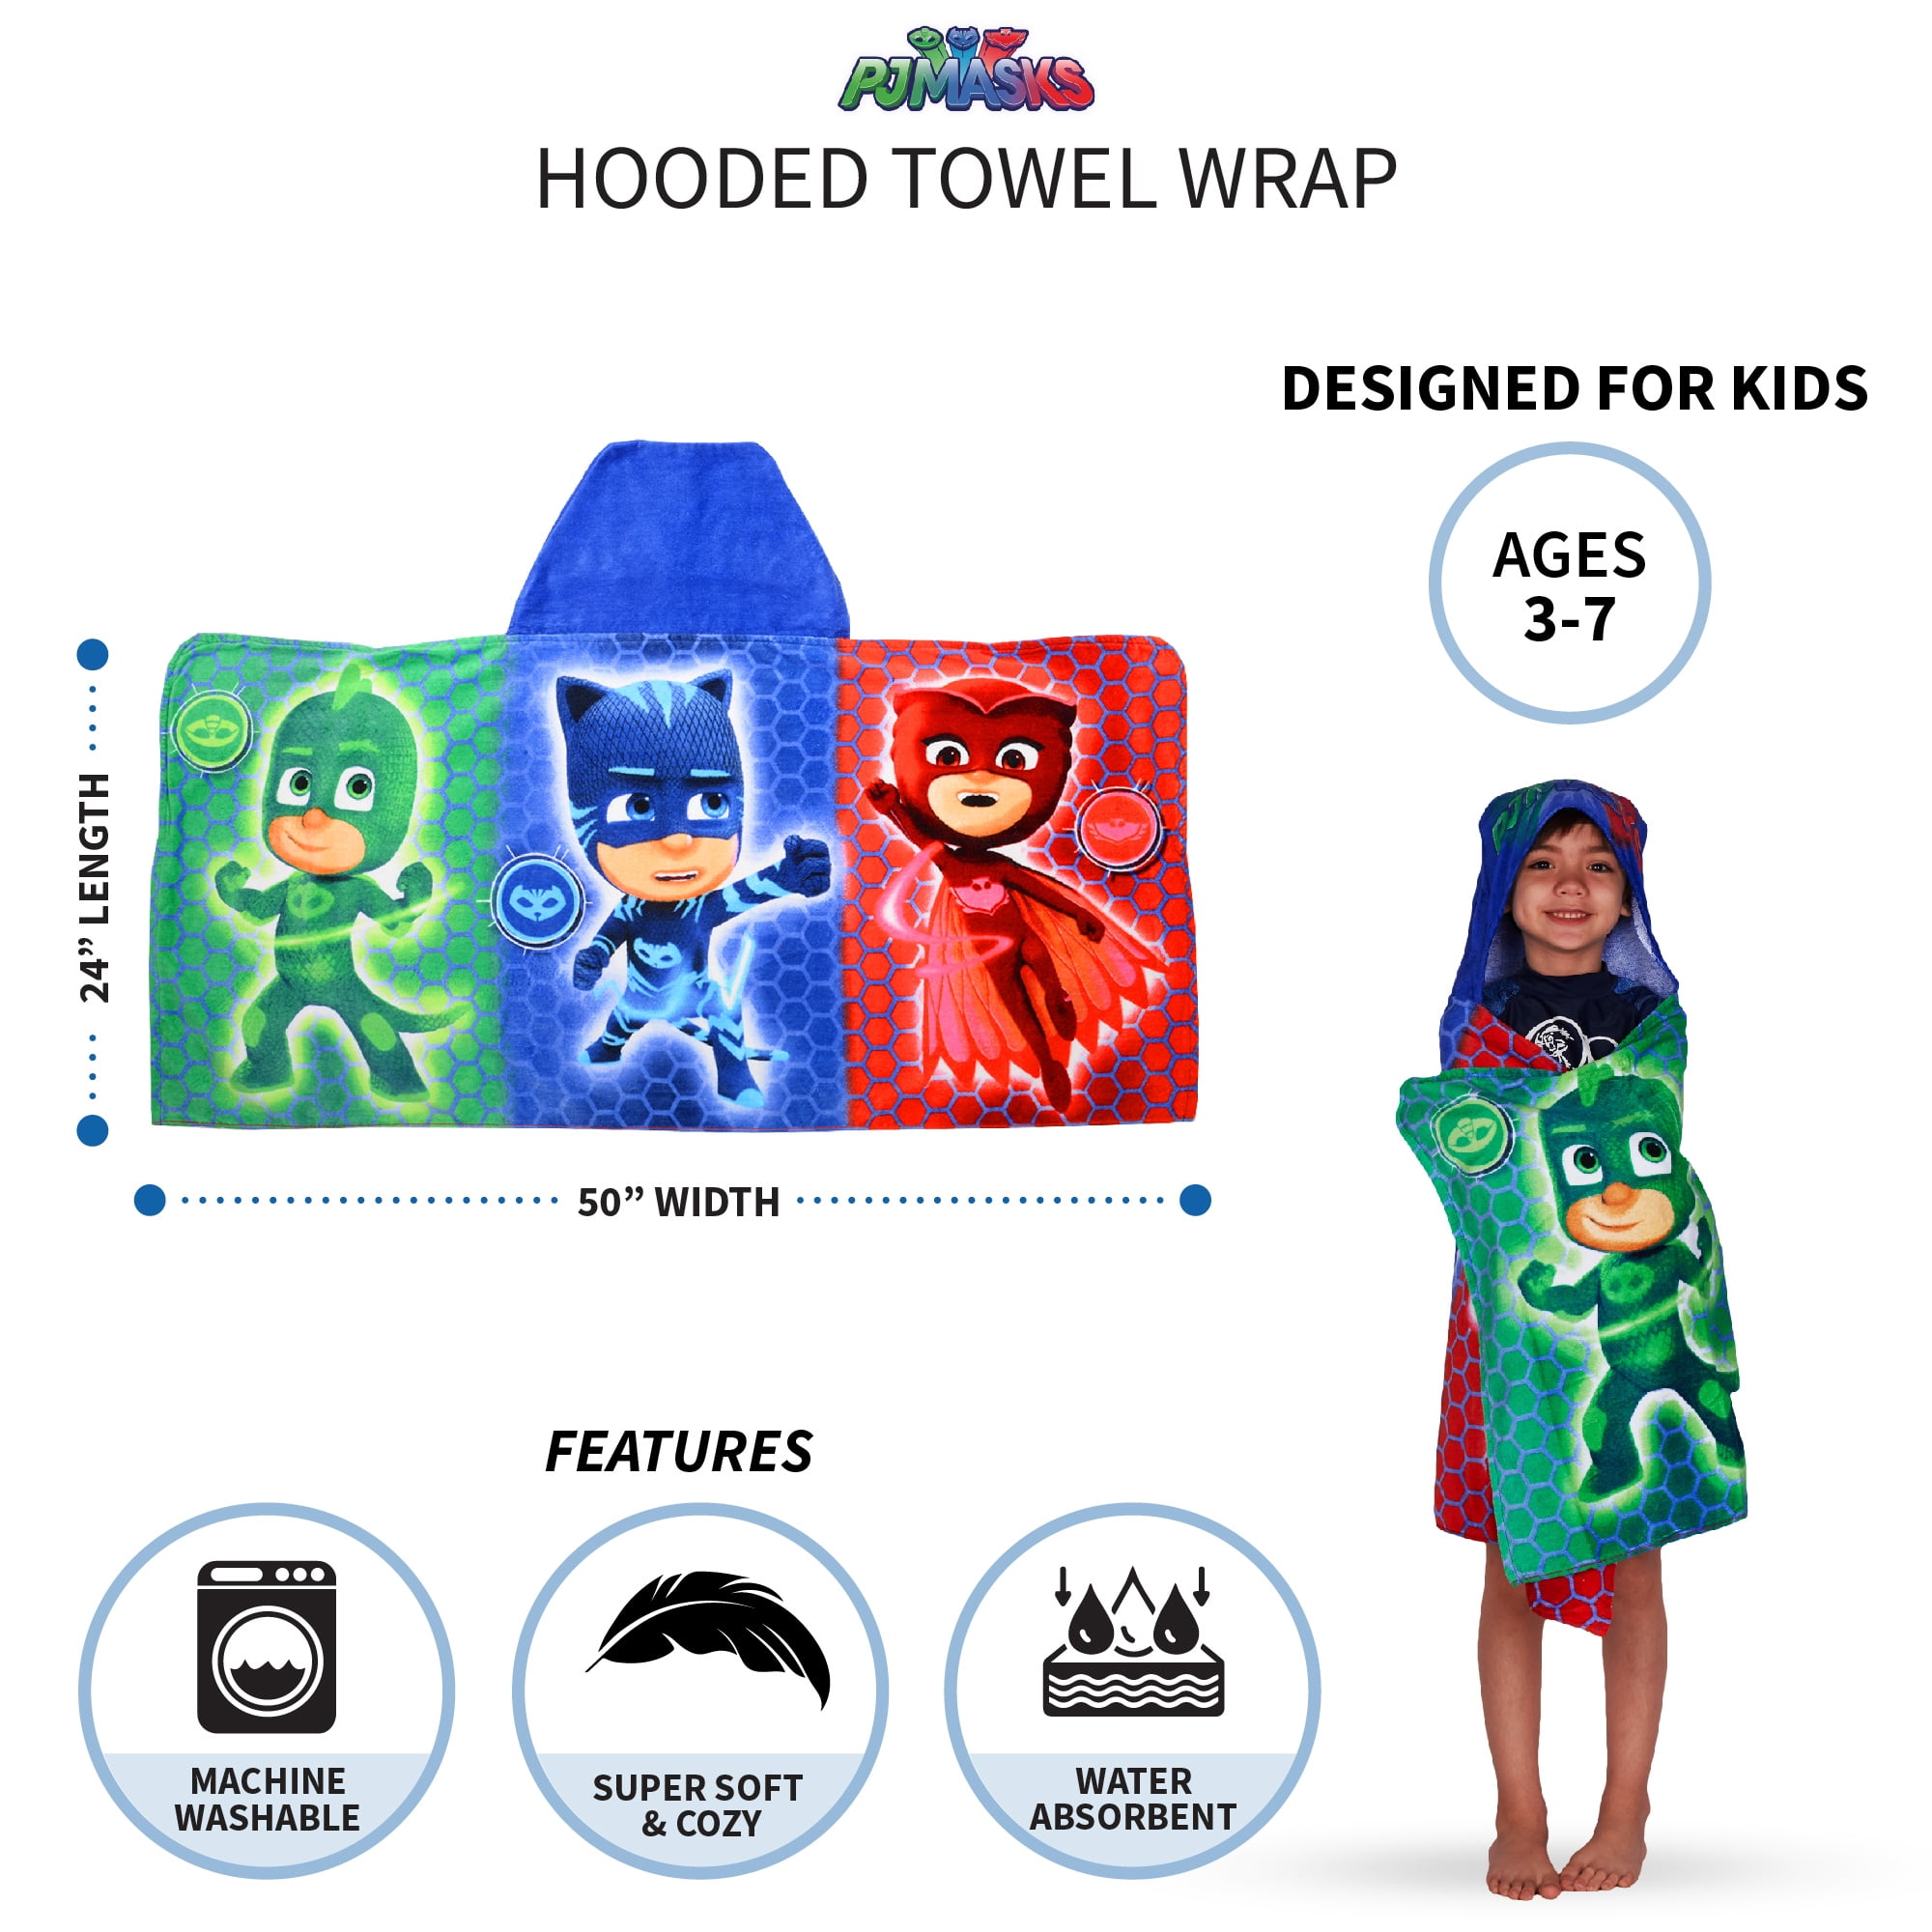 Gekko PJ Mask Inspired Hooded Towel on High Quality Belk Department Store Towels